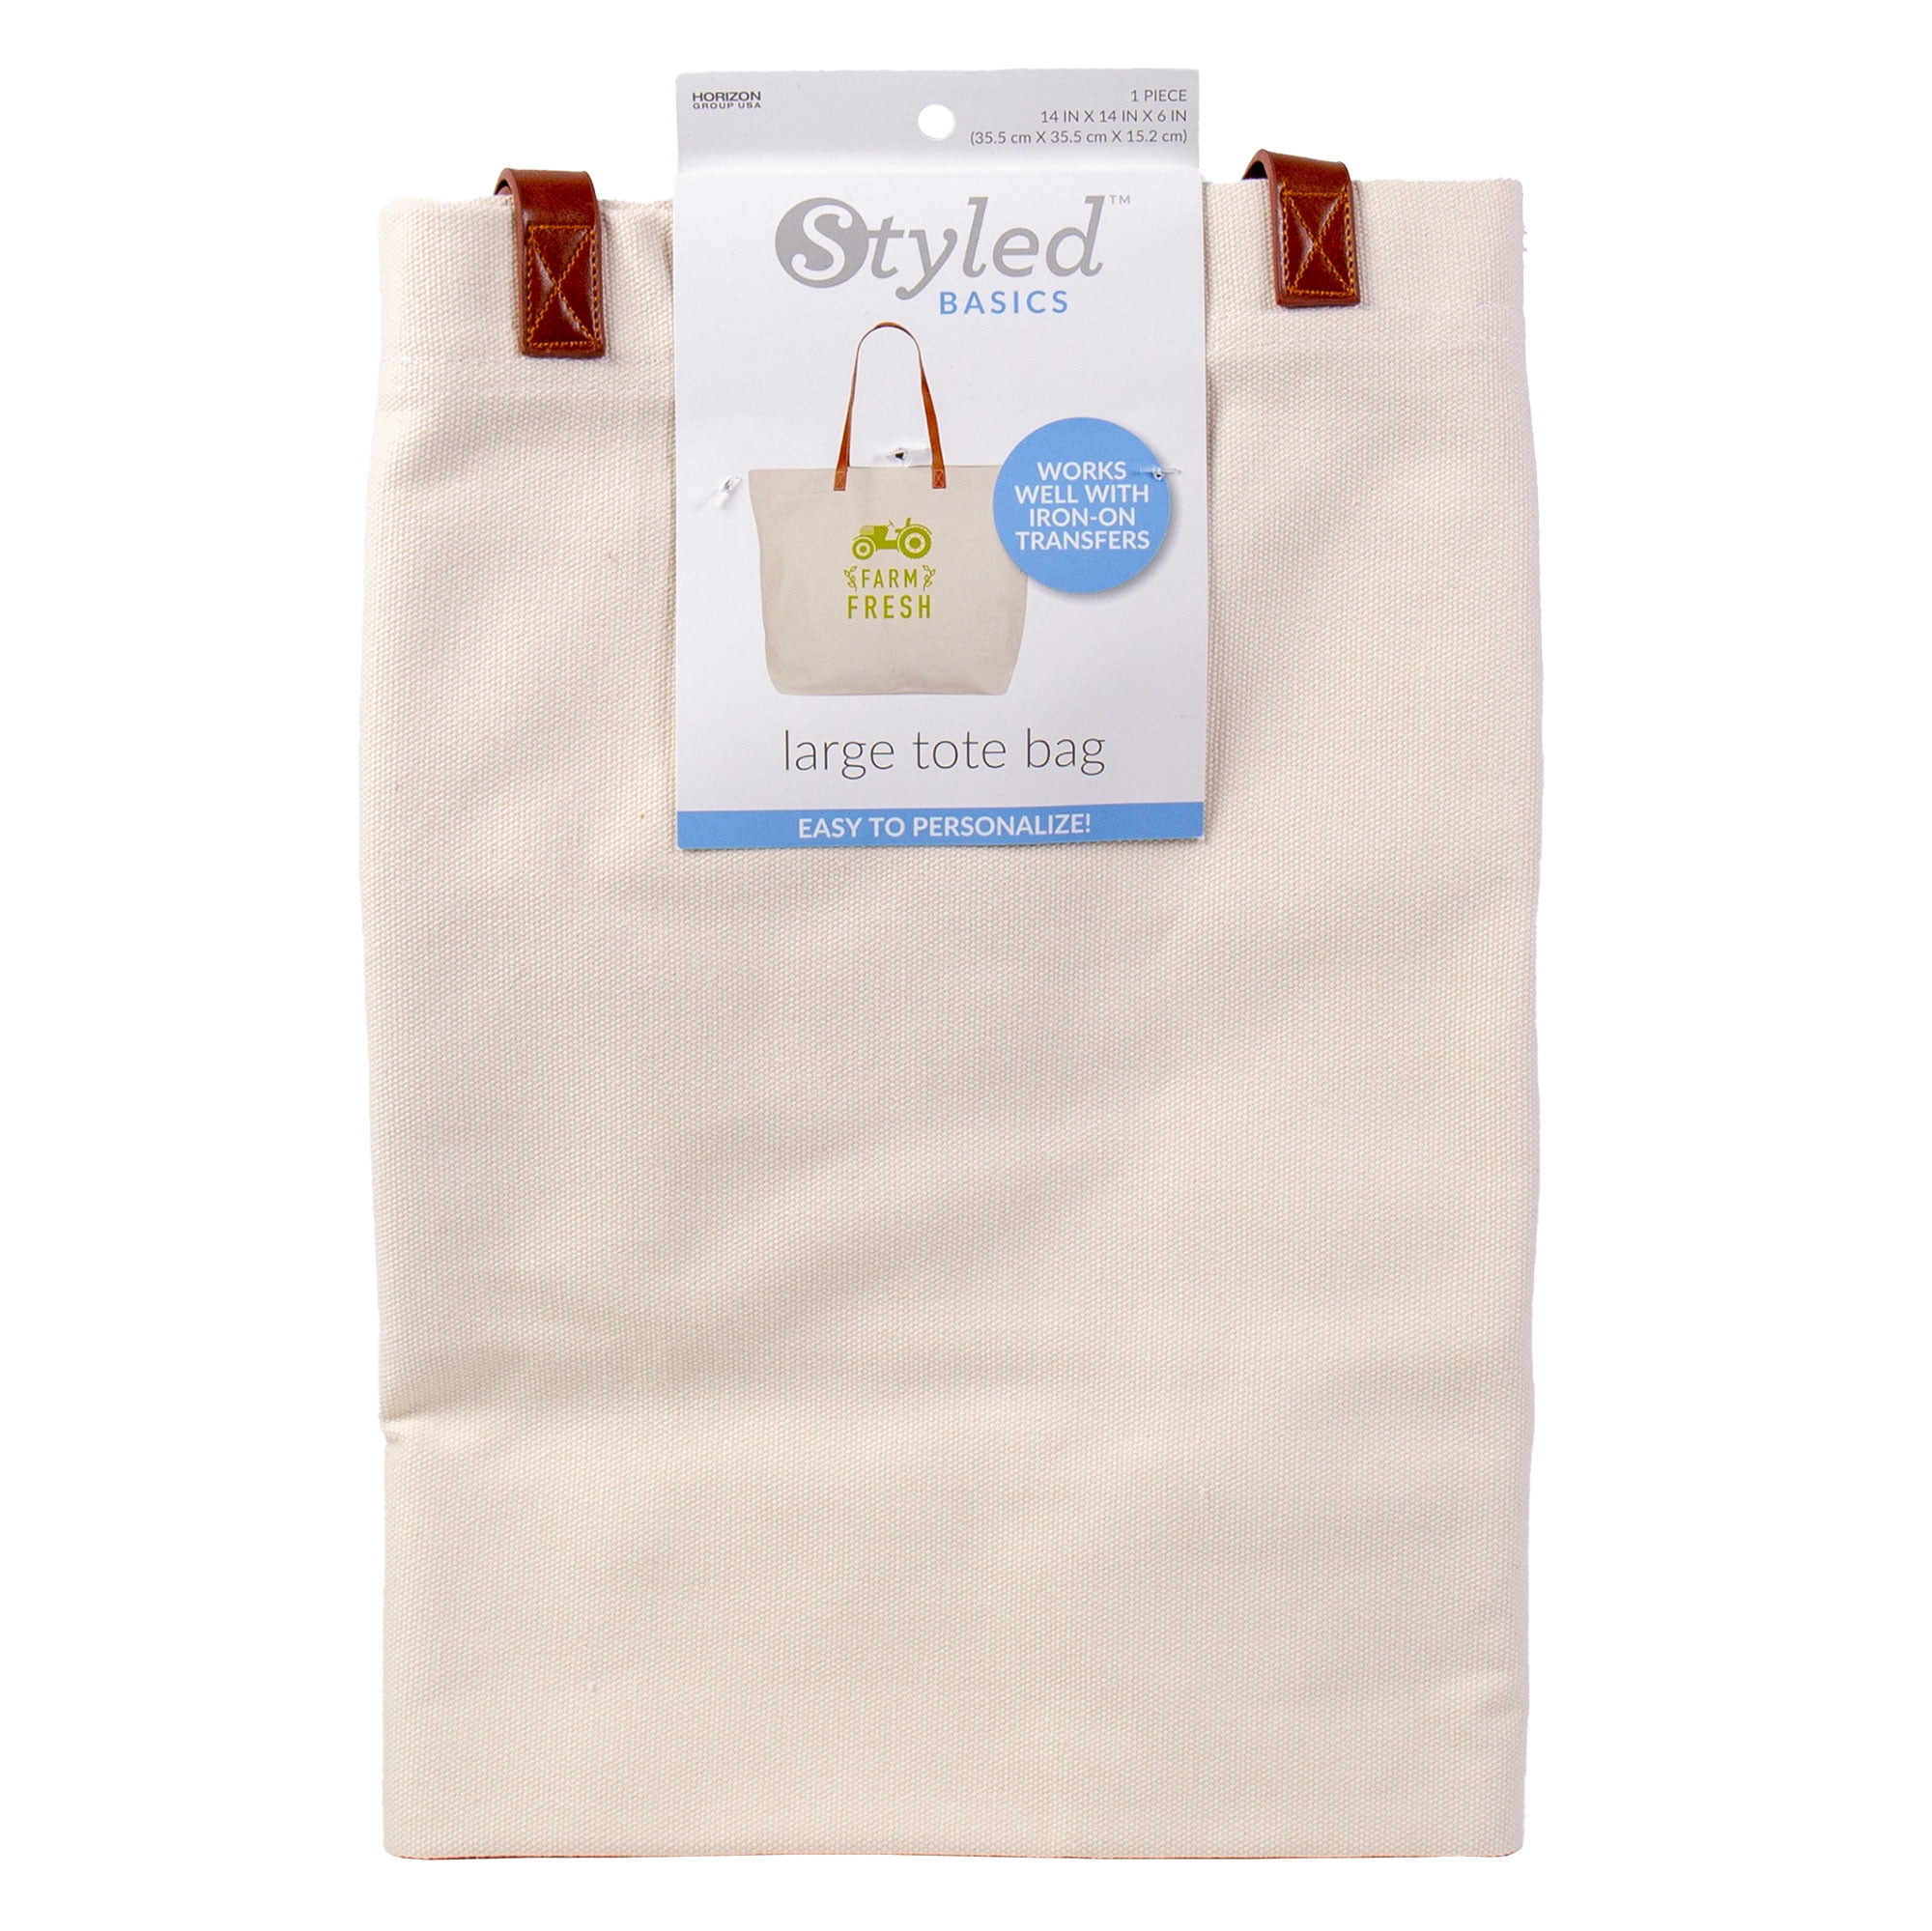 Quality Wash Black Canvas Bag Multi Pockets Shoulder Carry Wide Strap 